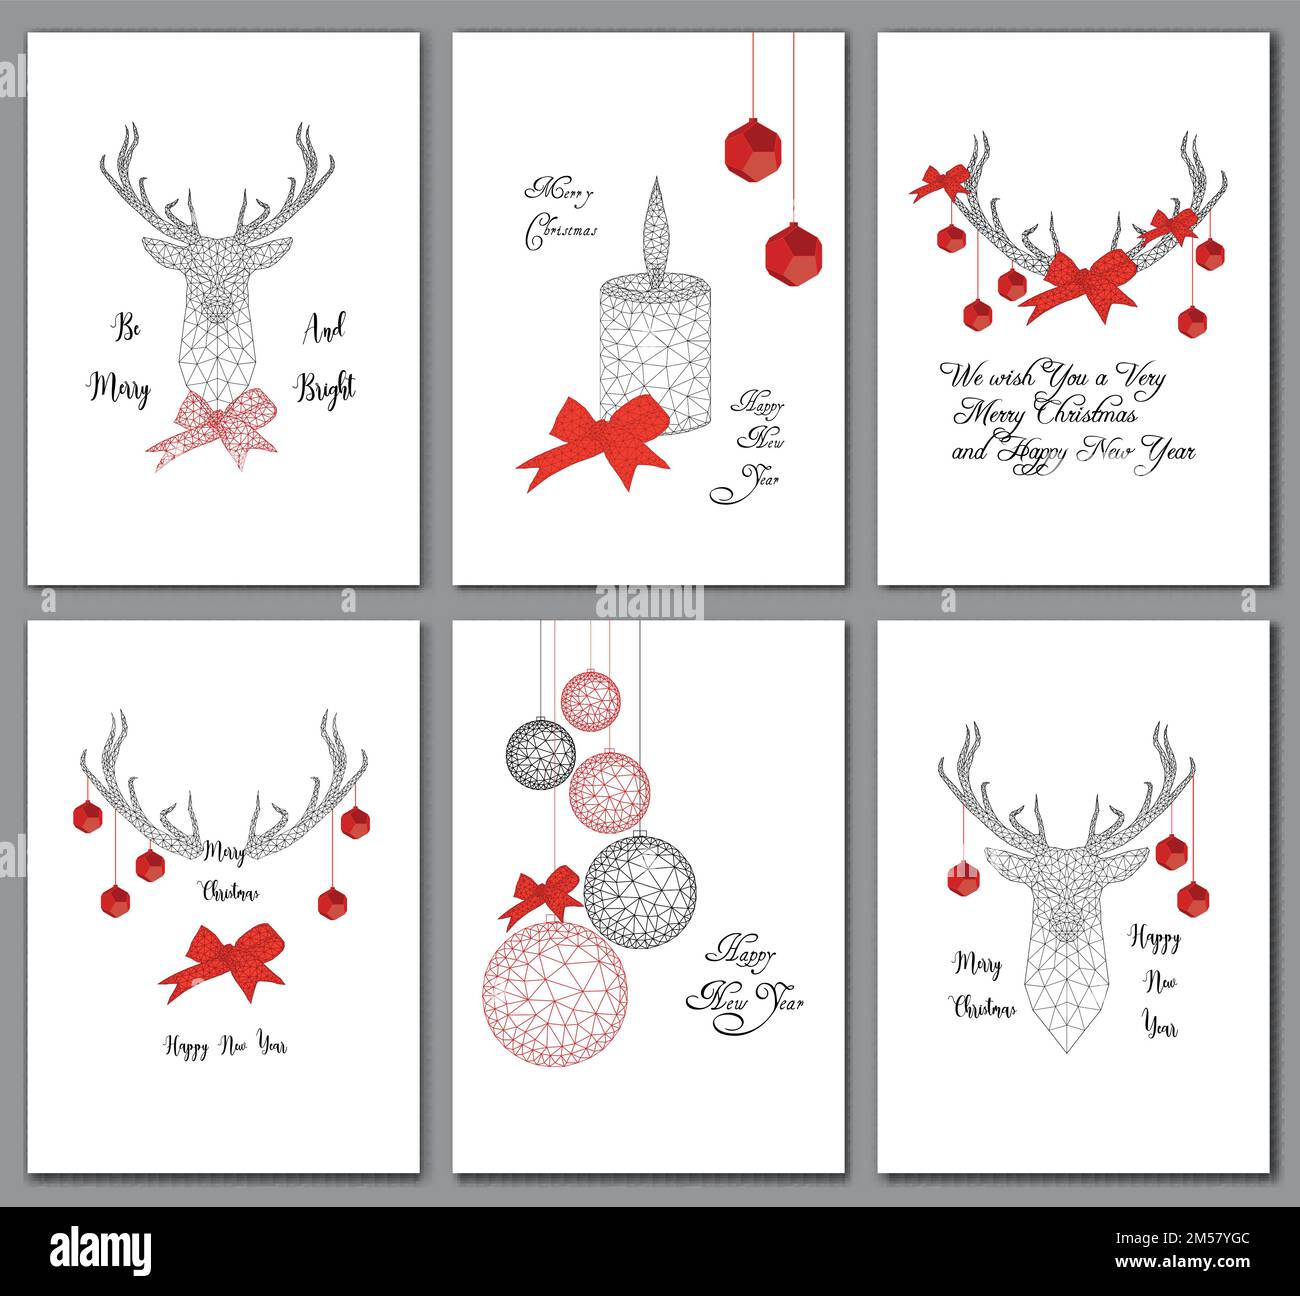 Set mit Weihnachtsgrußkarten mit schwarz-roten, niedrig polygonalen Dekorationen, Hirschkopf, Kugeln, Schleife, Kerze und Text isoliert auf weißem Hintergrund Stock Vektor